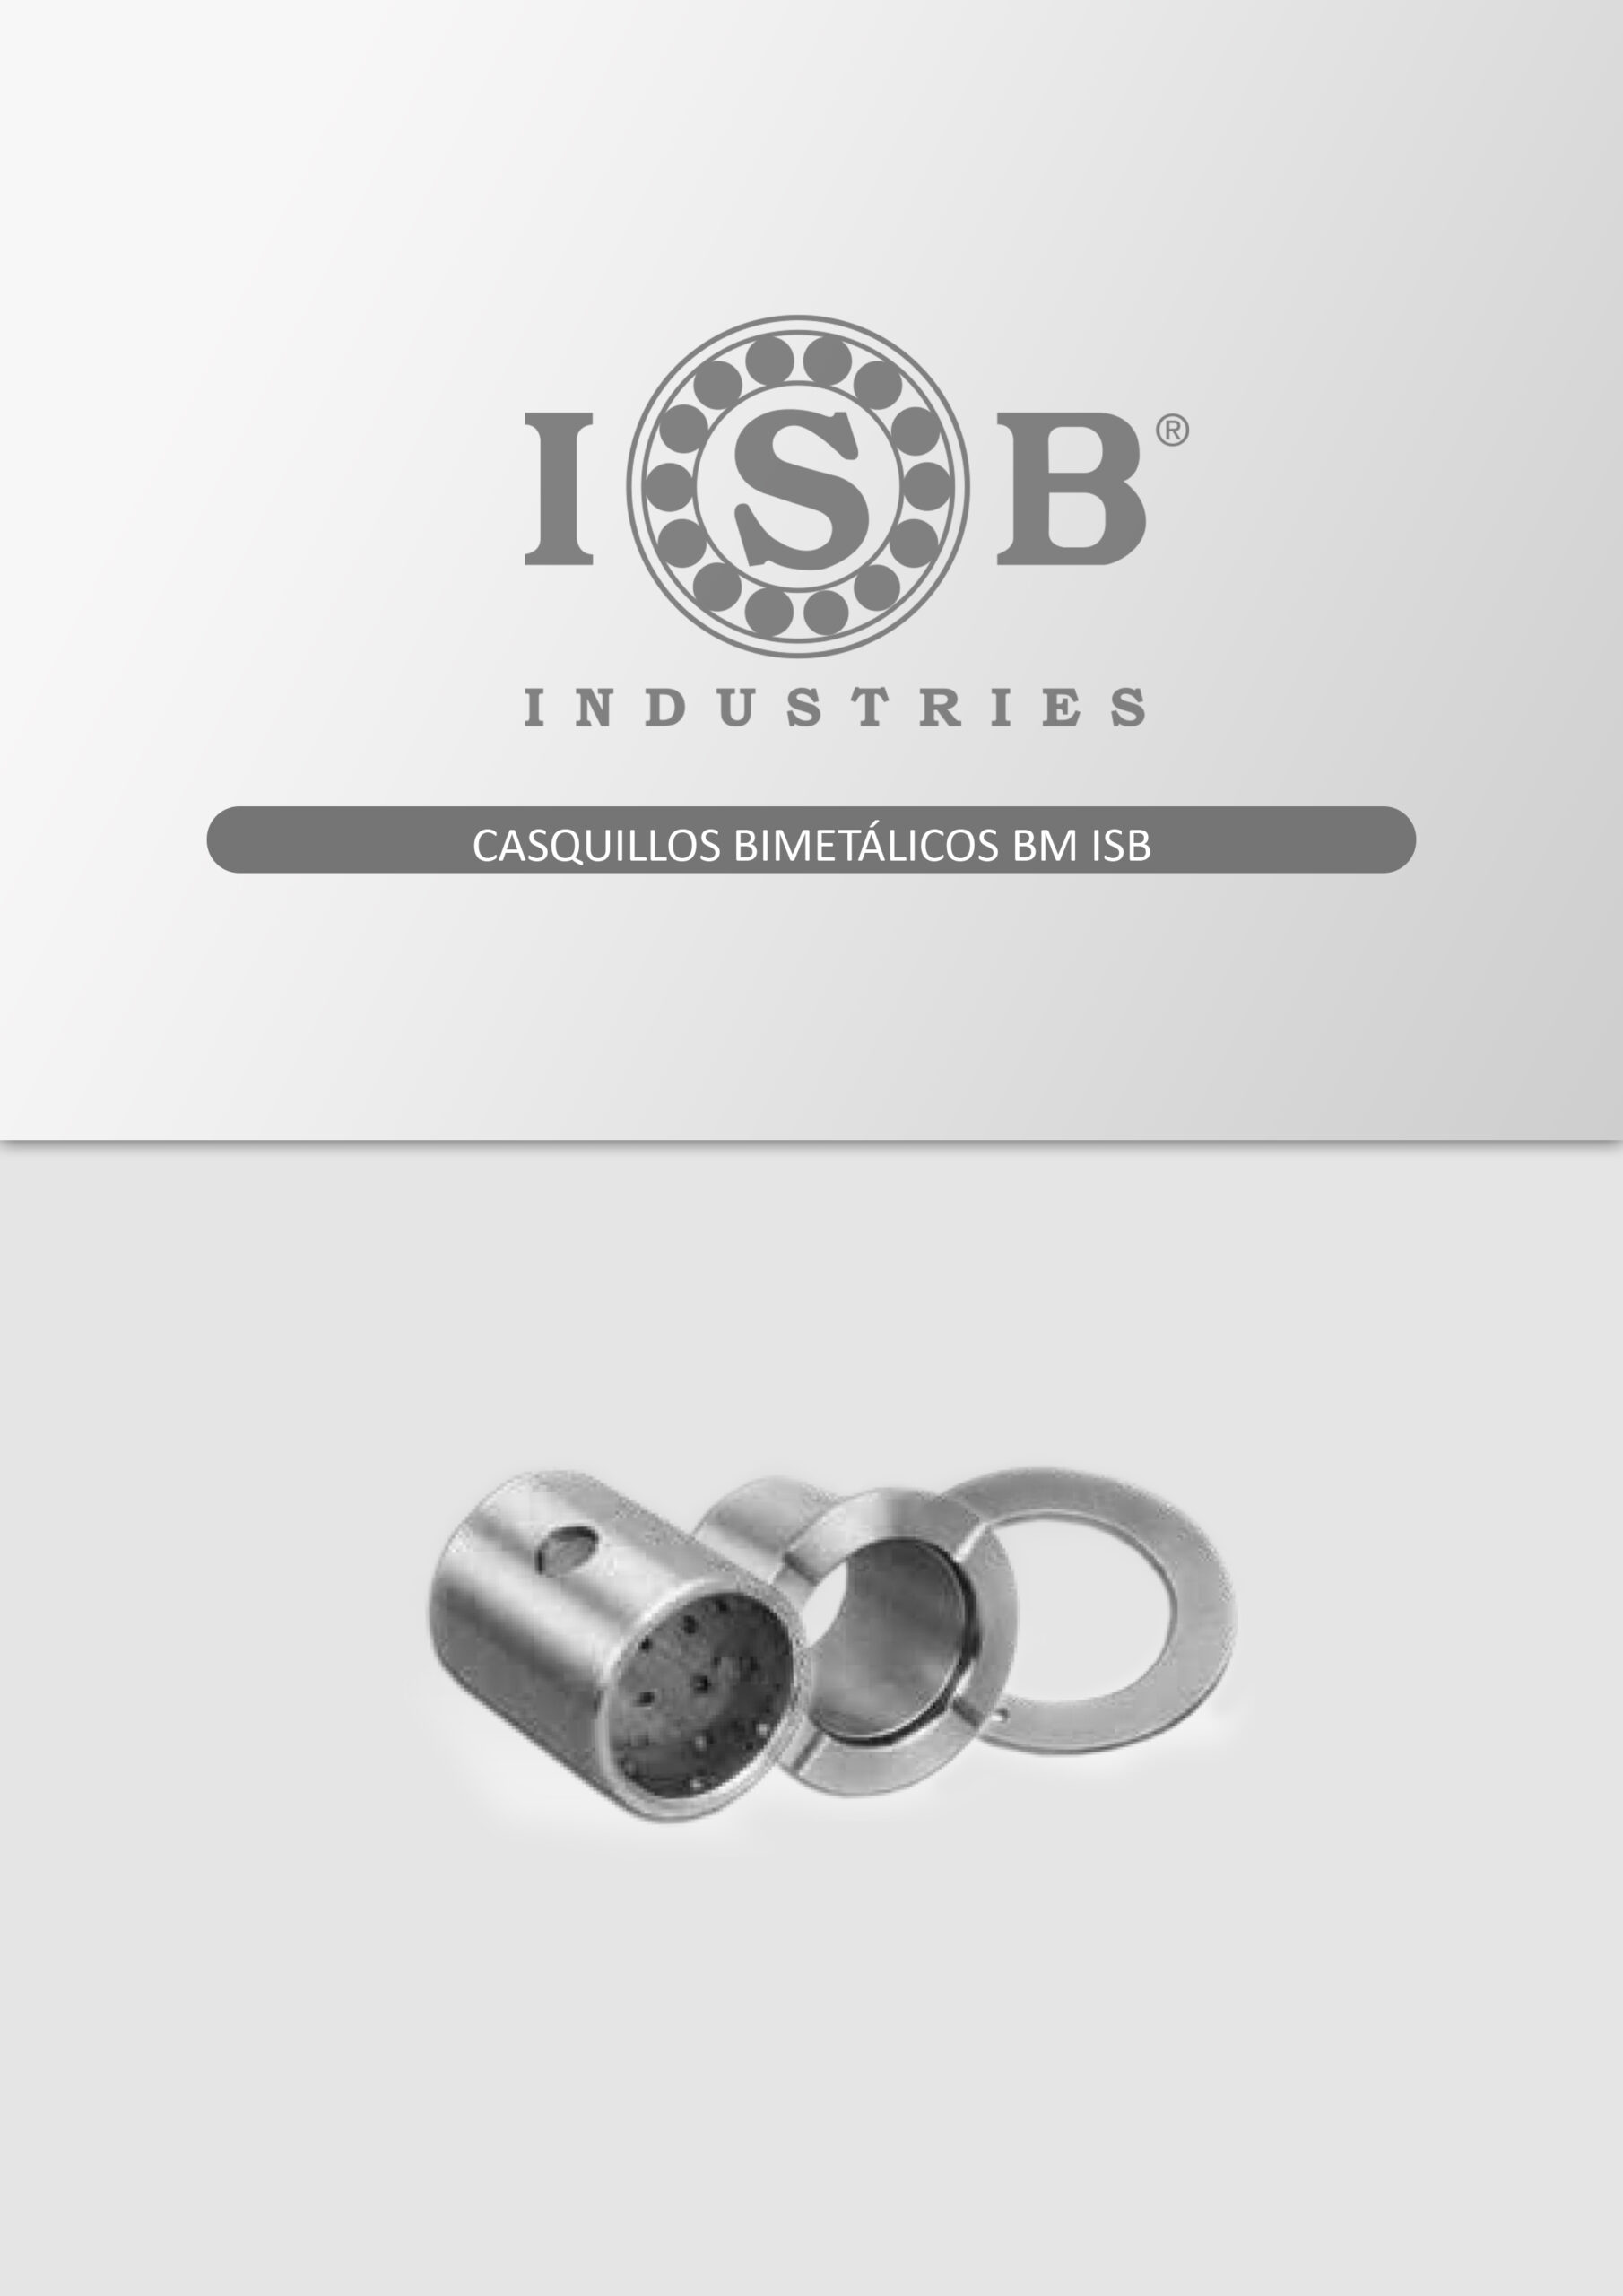 Casquillos-bimetalicos-BM-ISB-scaled.jpg